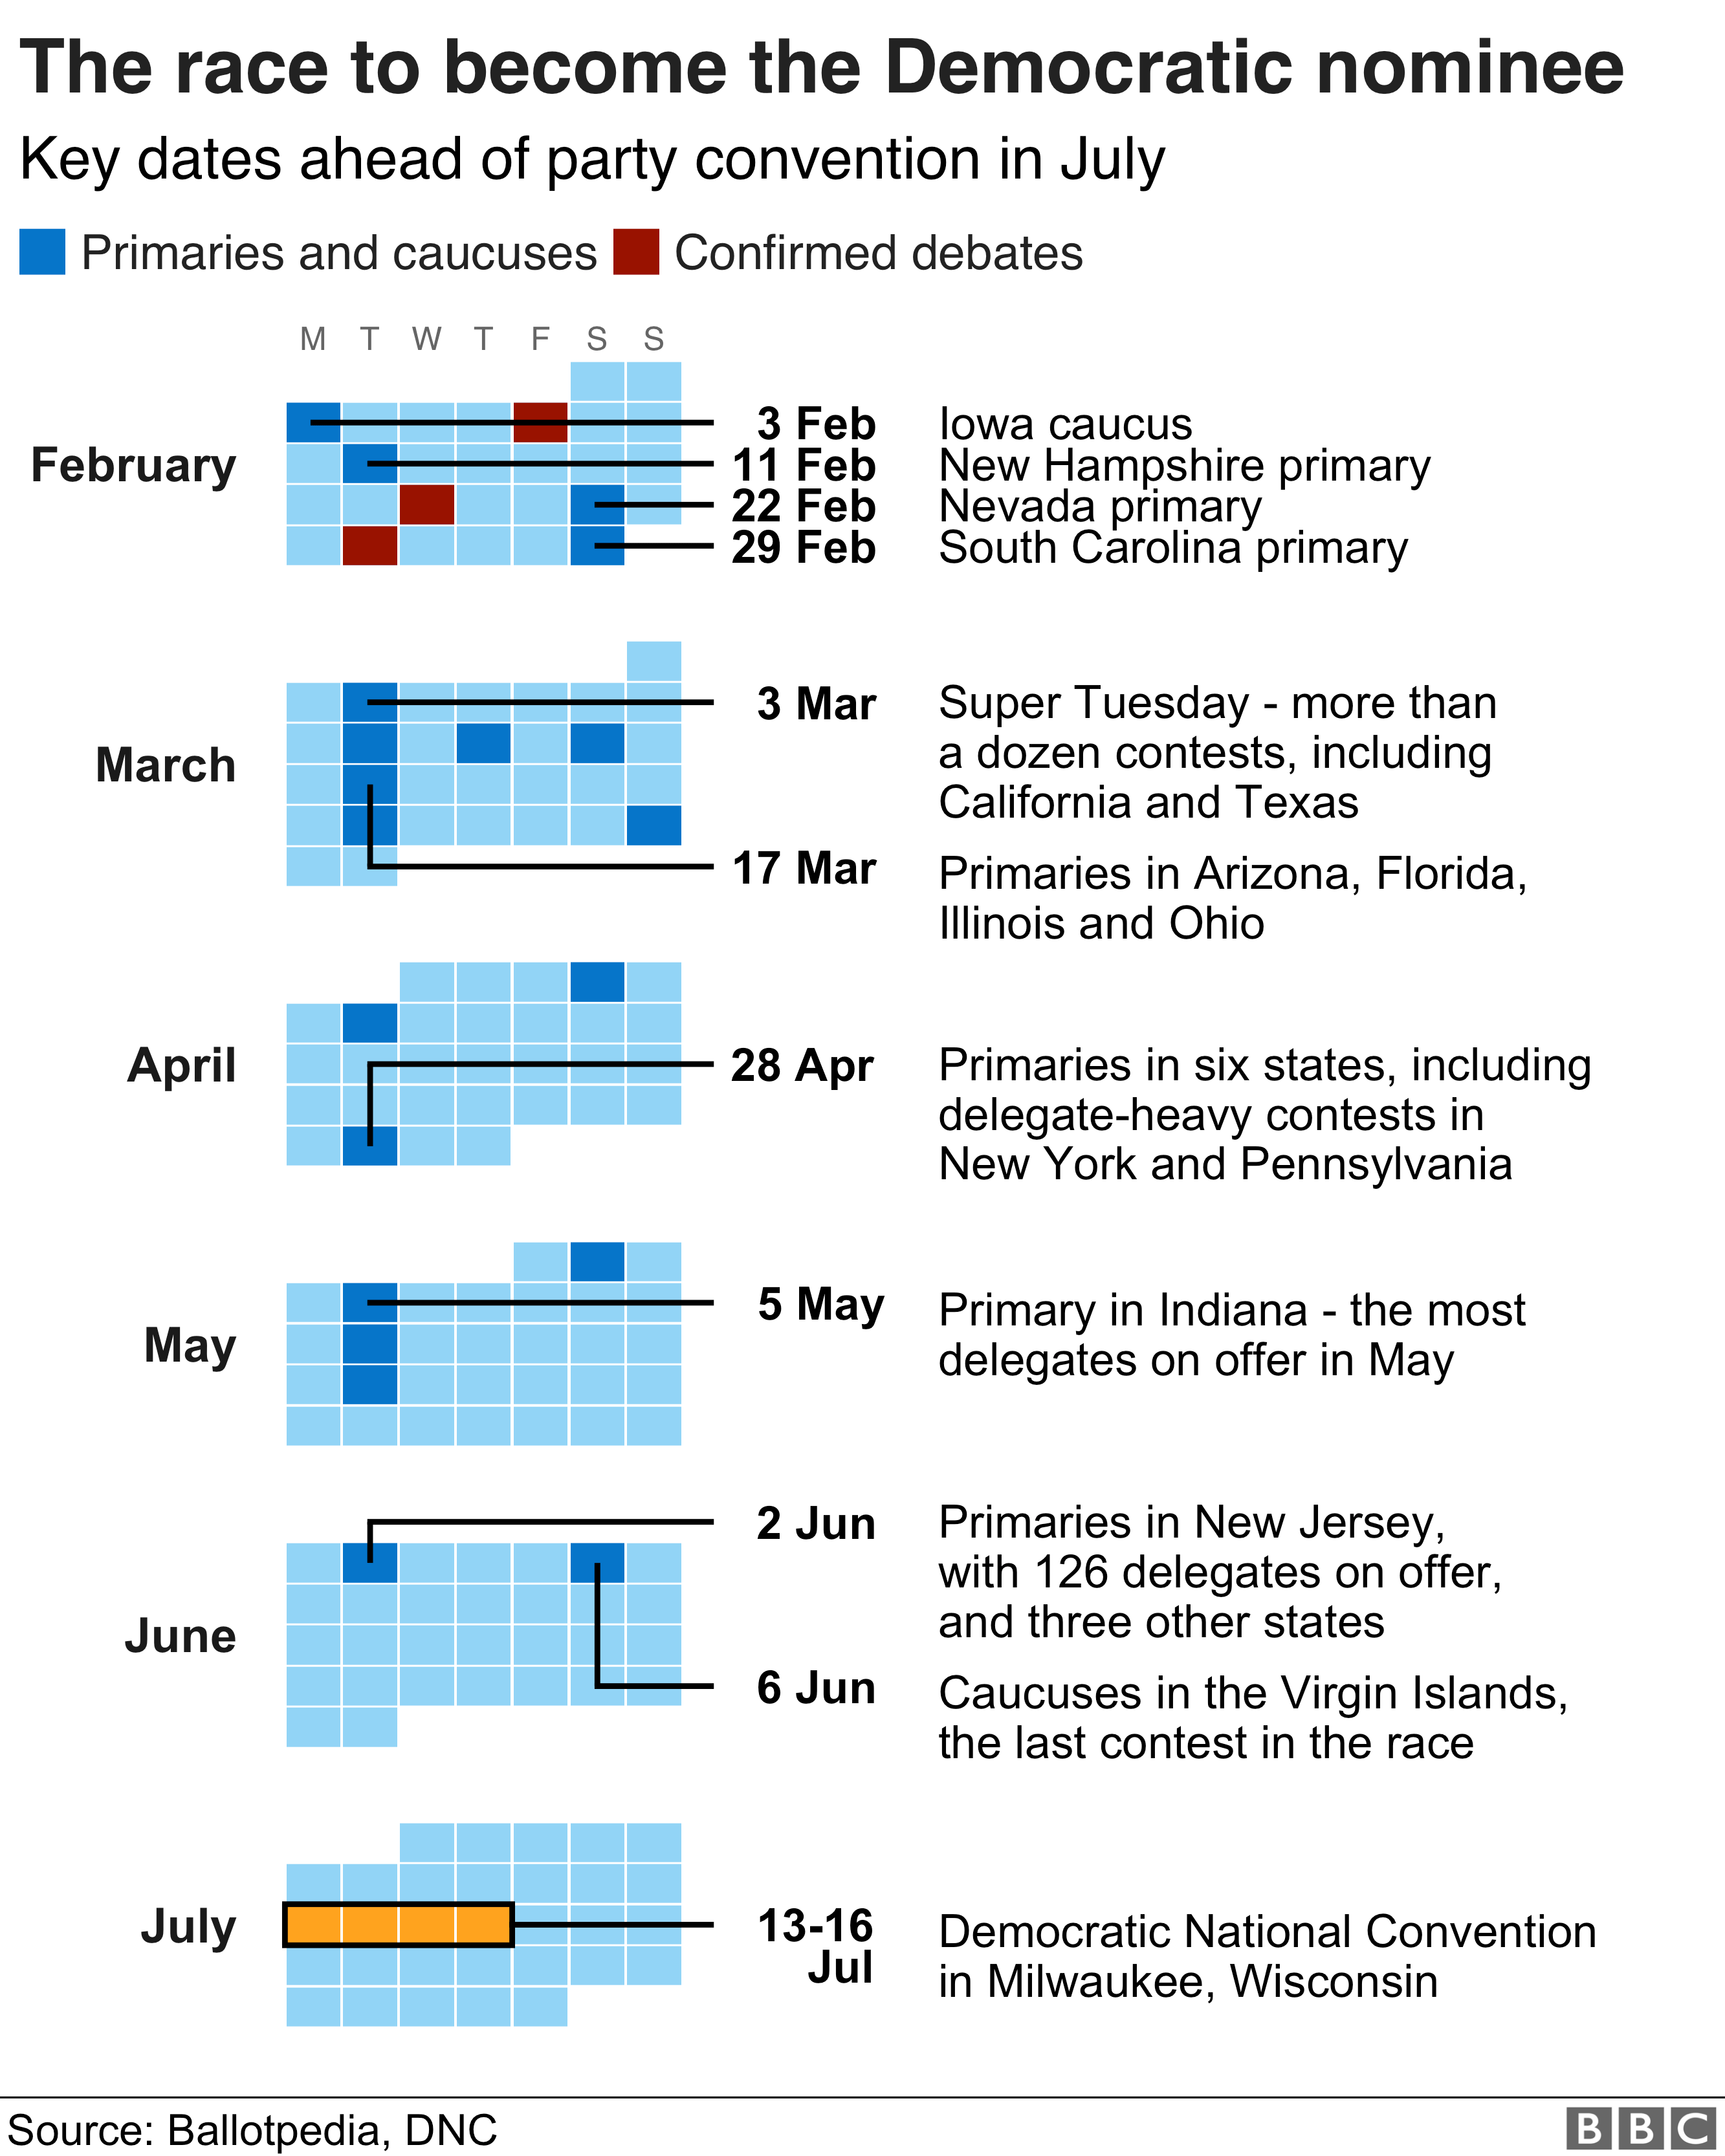 График календаря, показывающий некоторые ключевые даты в преддверии Национального съезда Демократической партии в июле